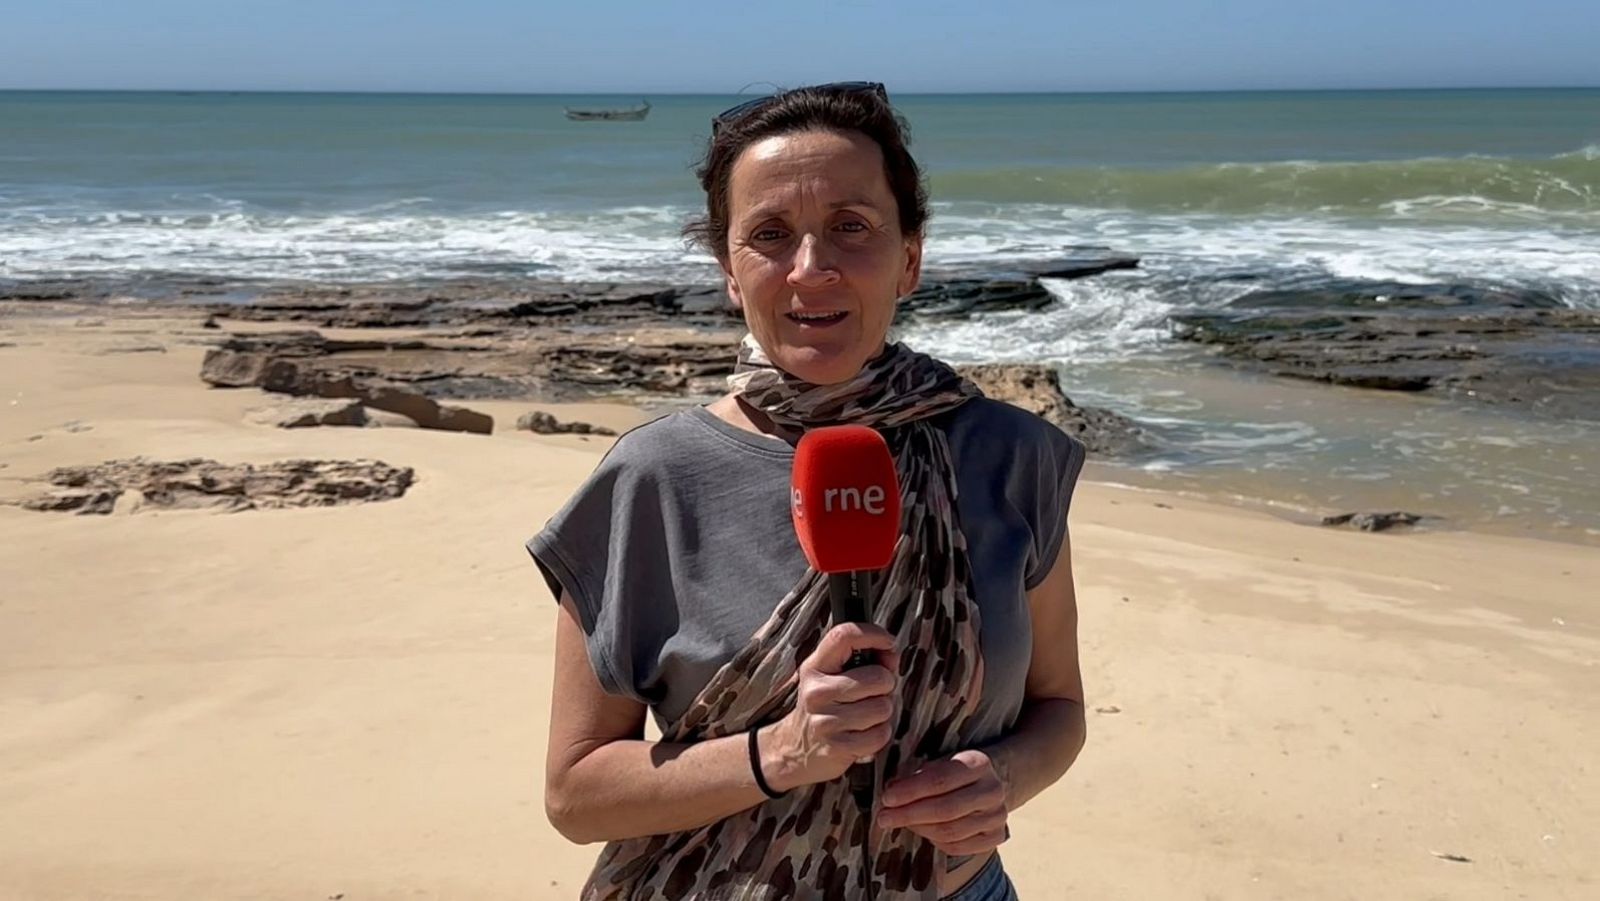 Radio 5 Actualidad - Migración a Canarias: el punto de partida desde Mauritania